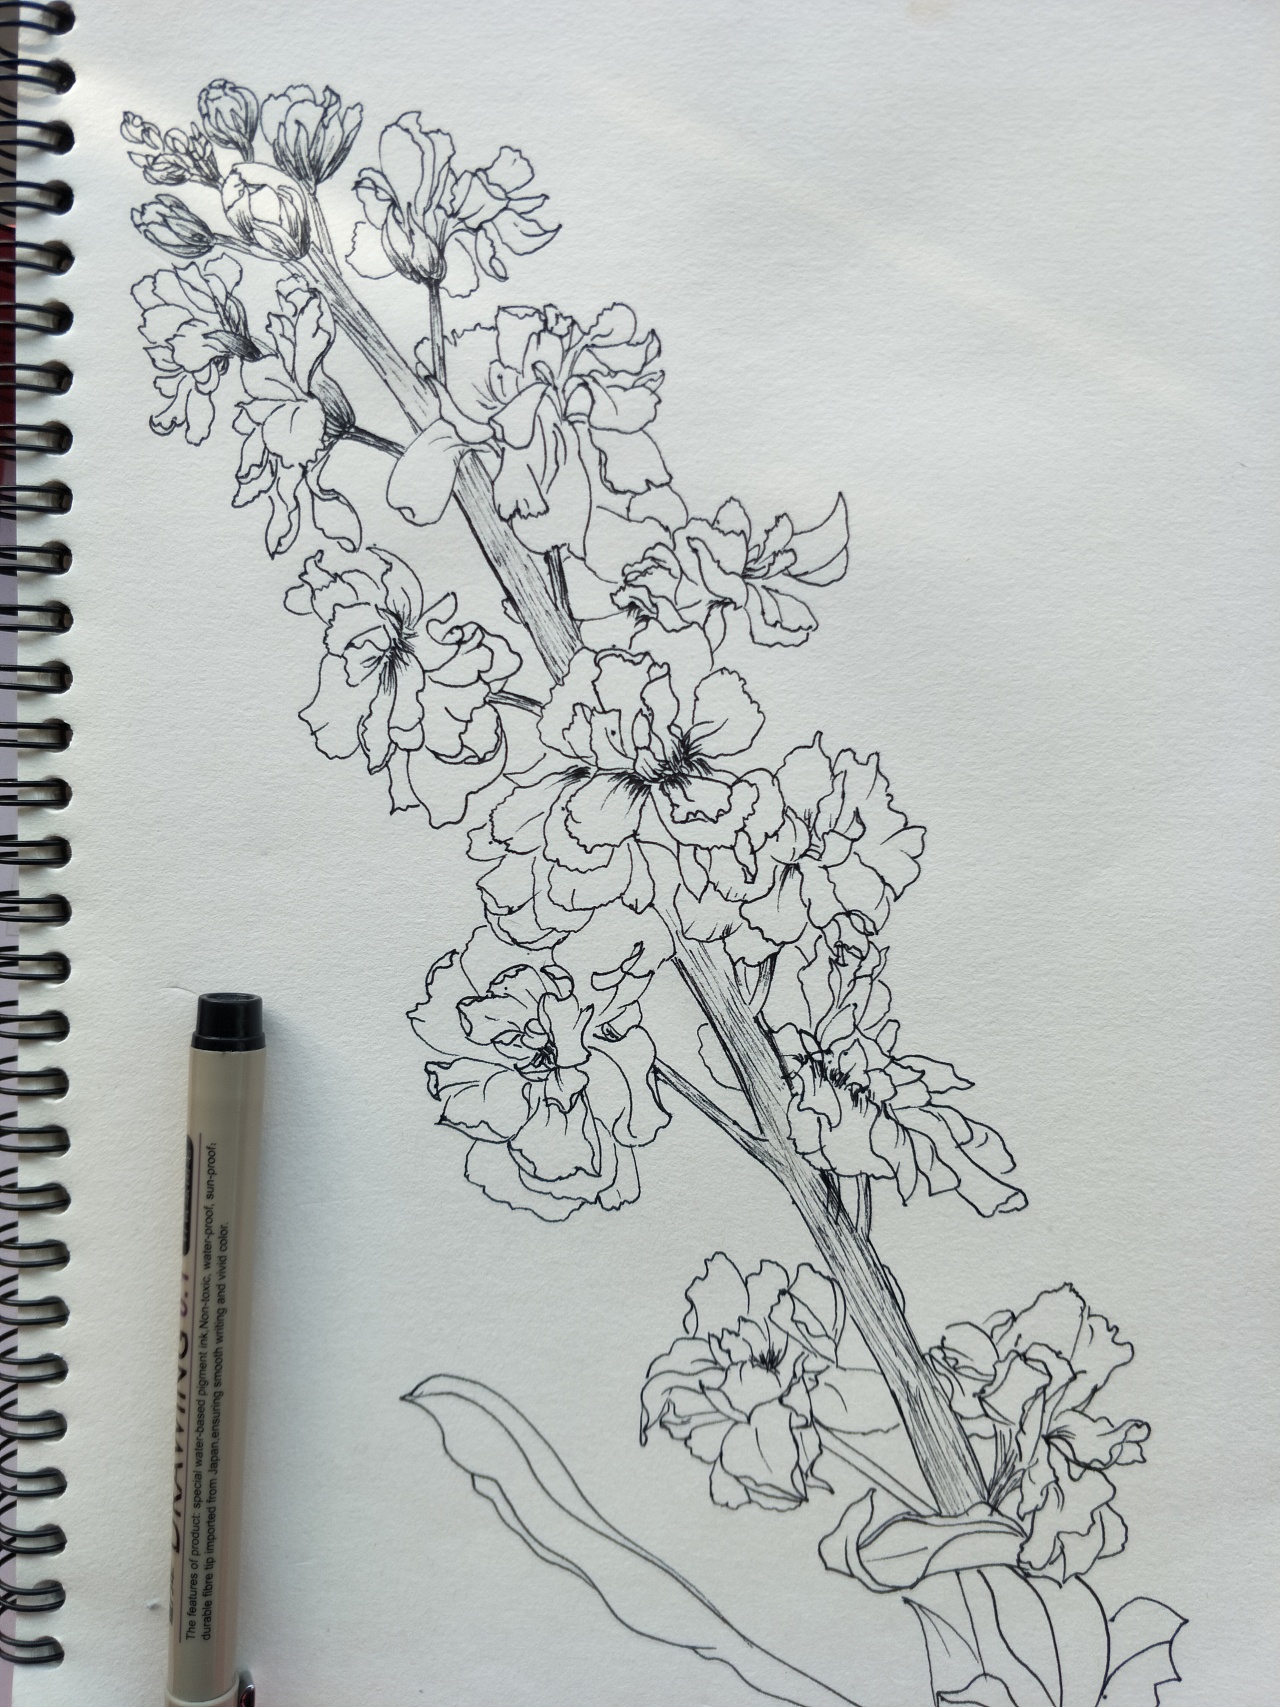 紫罗兰花画法图片